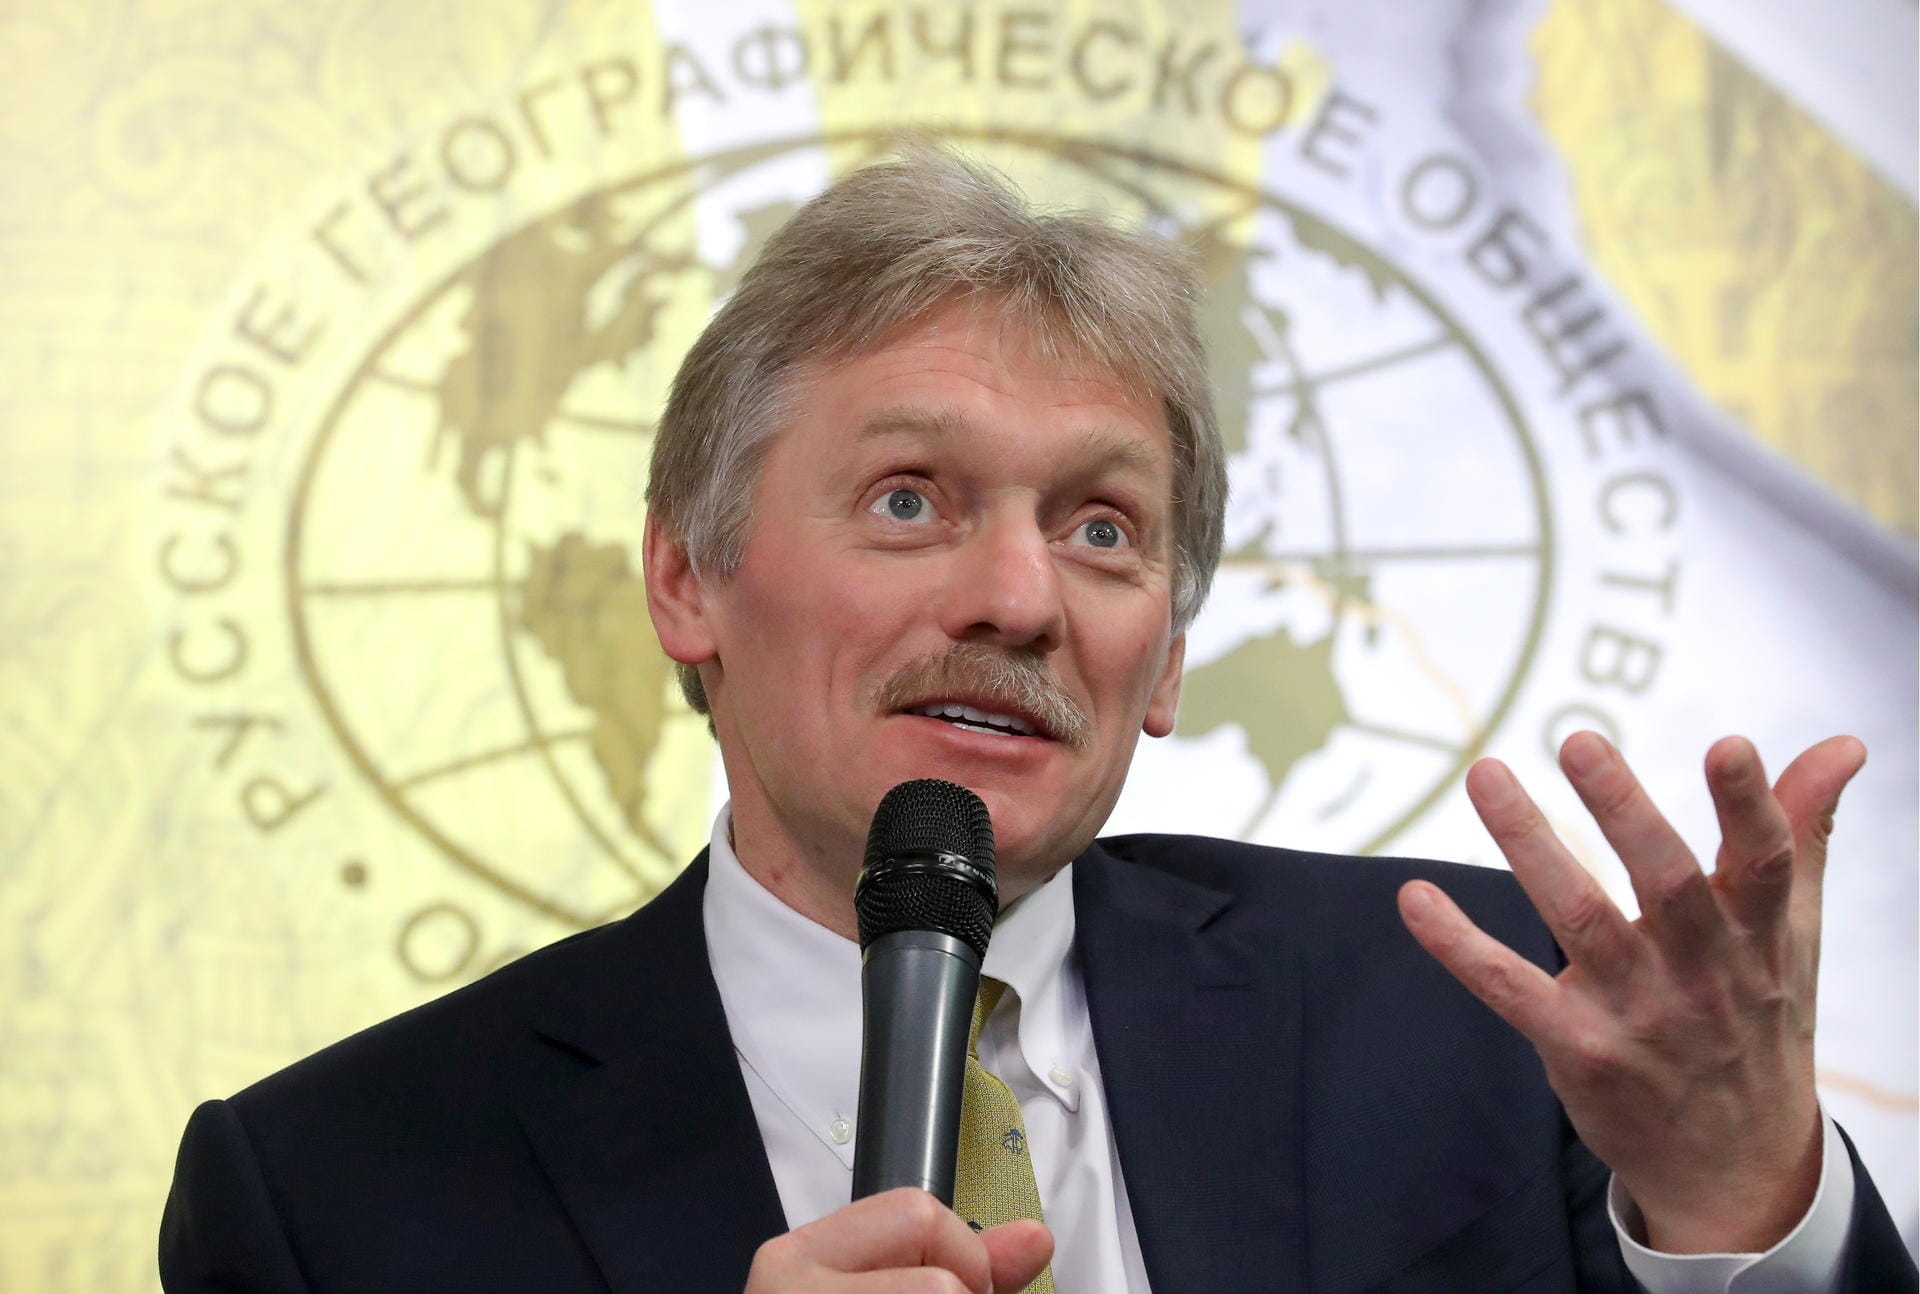 Kremlsprecher Dmitri Peskow: "Es gibt überhaupt keinen ernstzunehmenden Verdacht, und den kann es auch nicht geben."